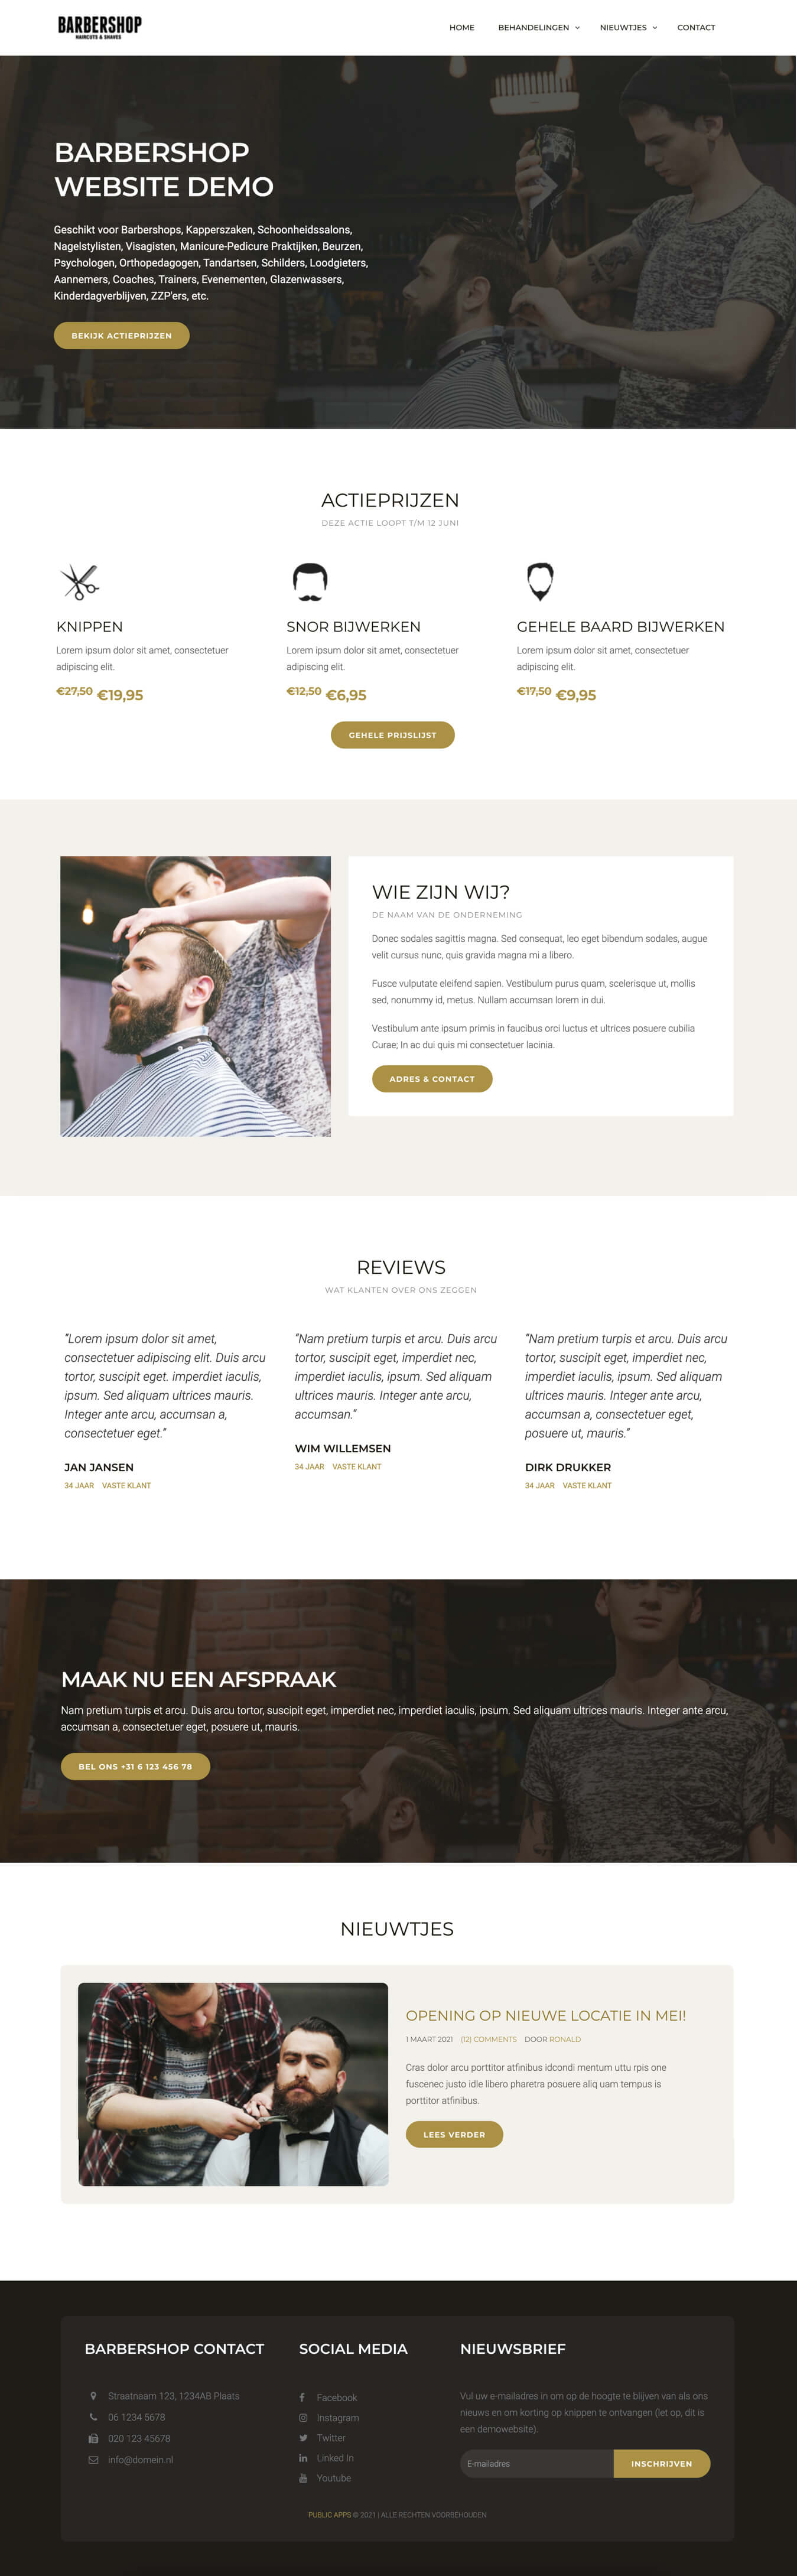 Demo van de homepage van een simpele en goedkope website